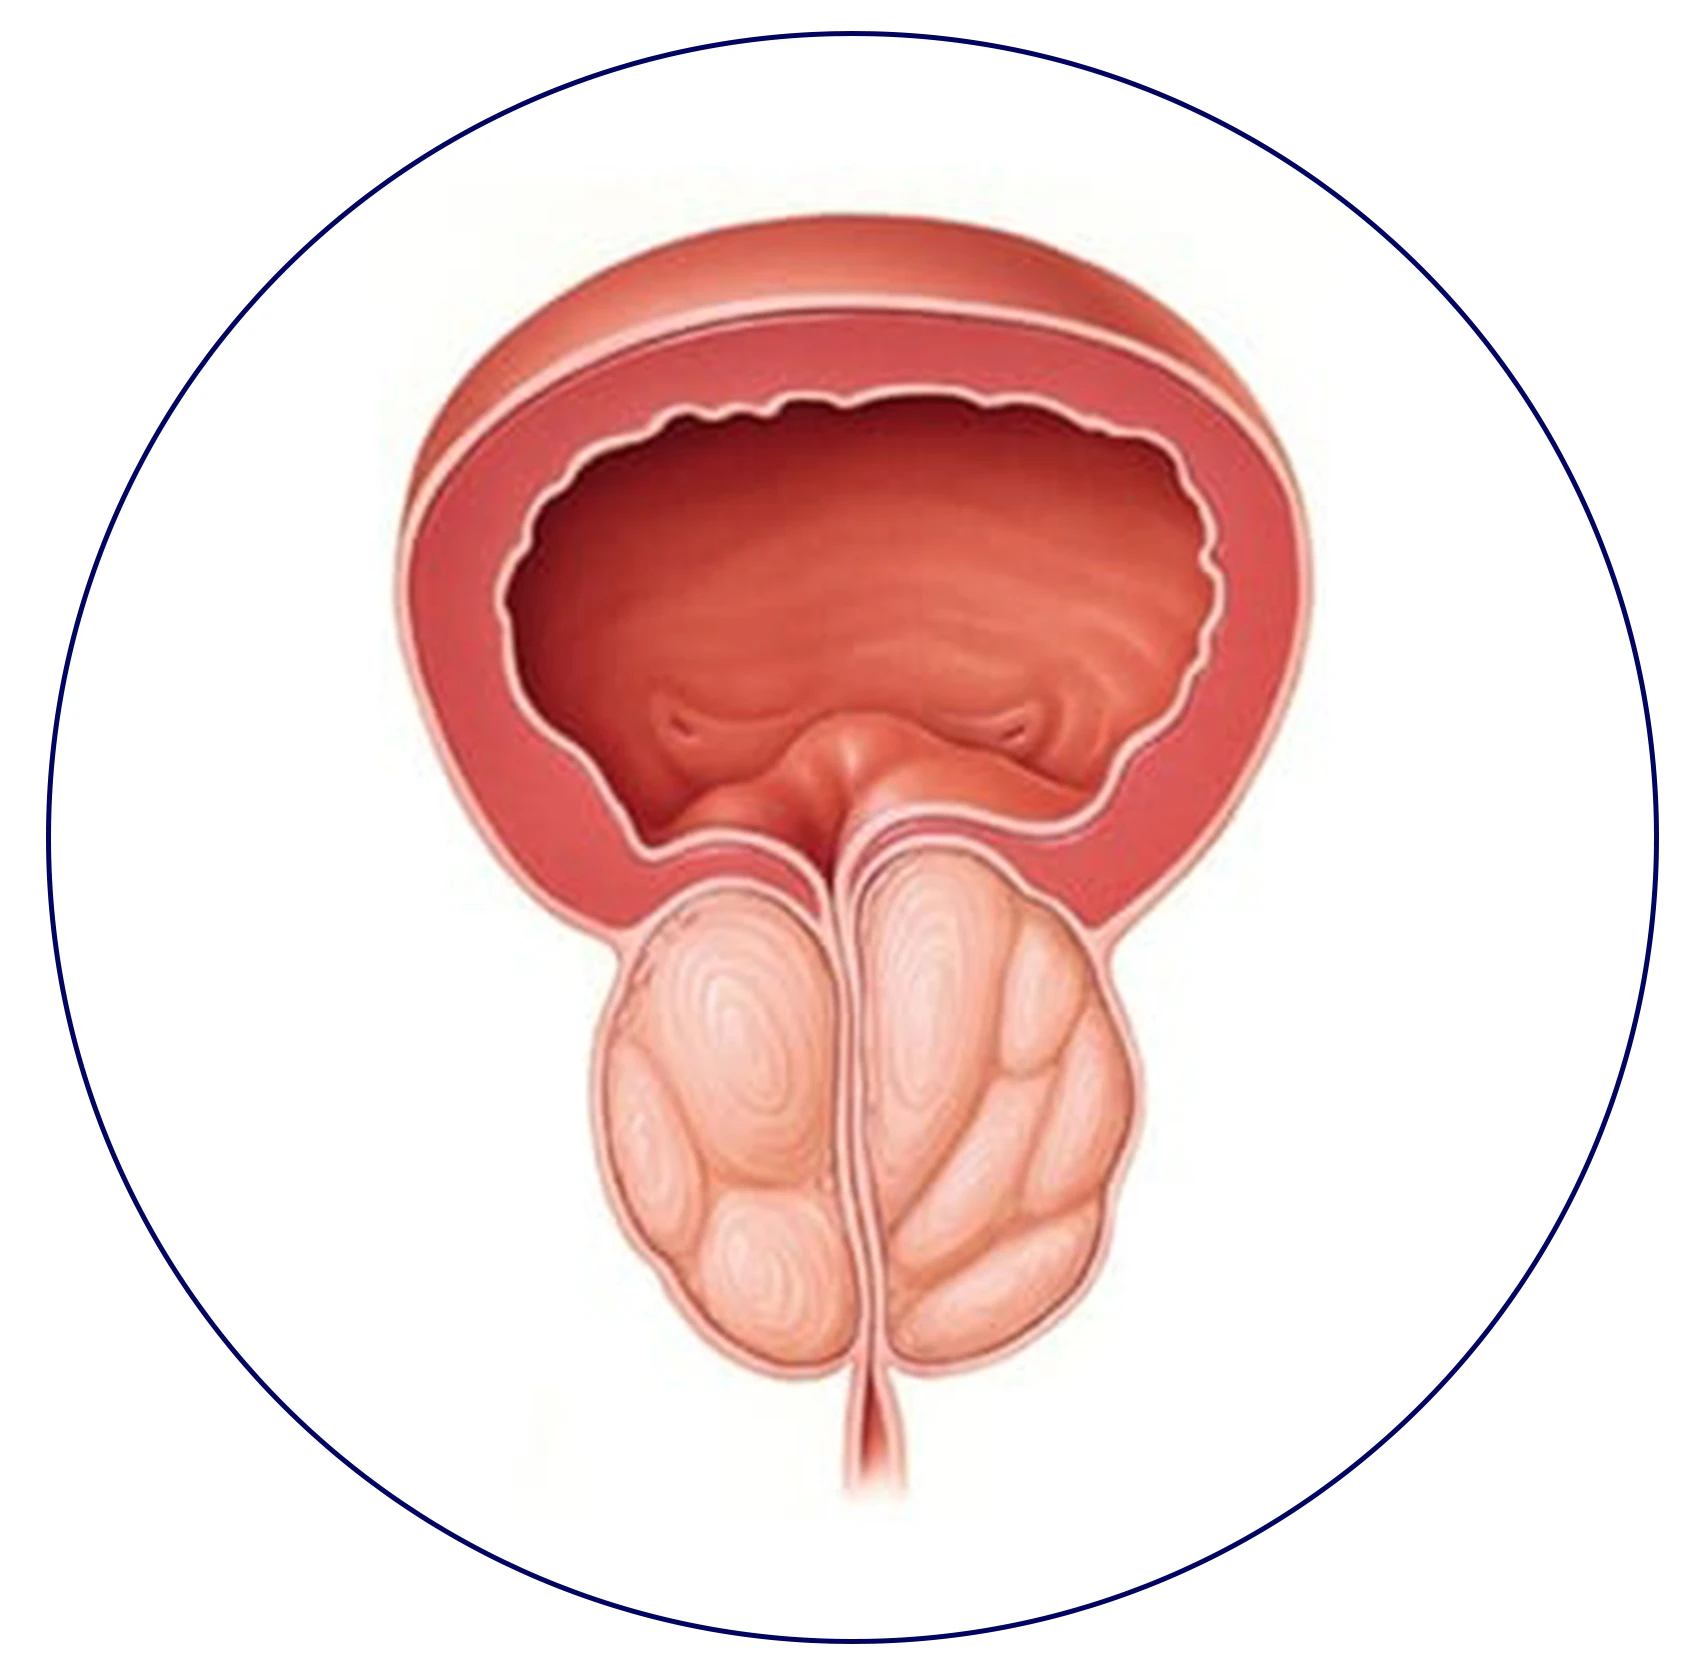 A medical illustration depicting the stages of bladder cancer